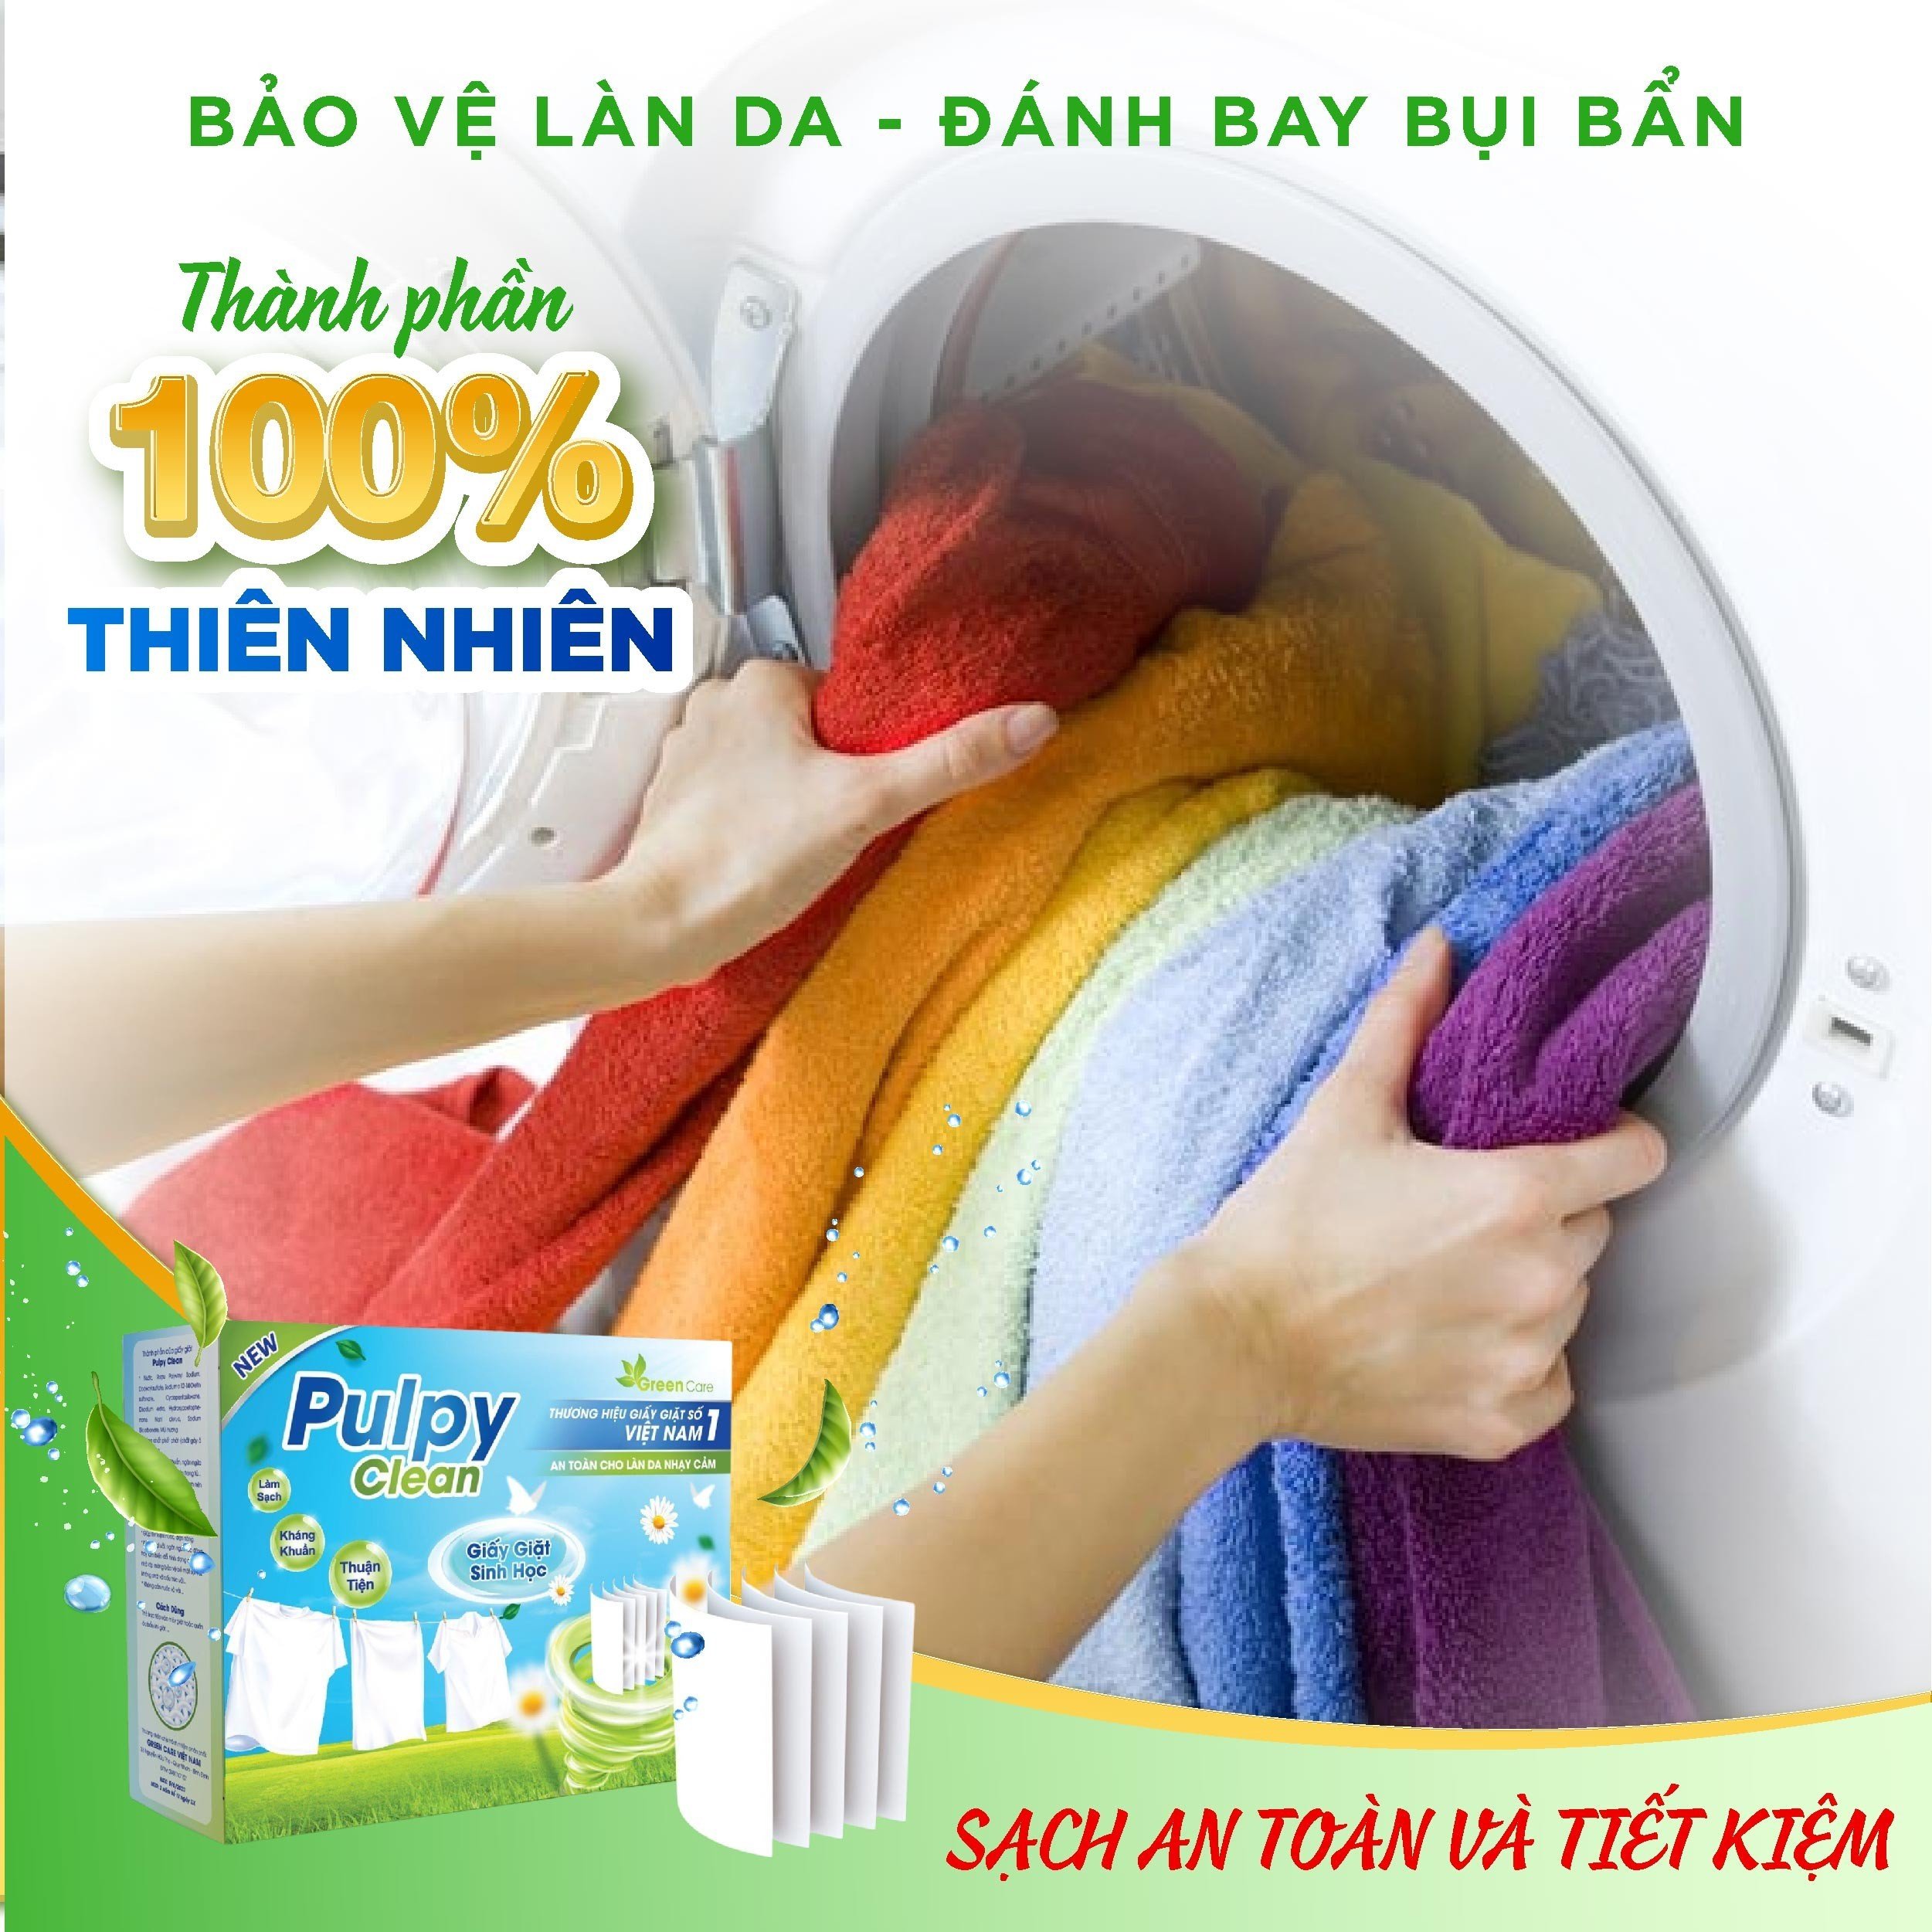 Giấy Giặt Sinh Học Pulpy Clean - 1 hộp 50 miếng, giấy giặt đồ 1 miếng 7 kg đồ thay cho xà phòng rất dễ bảo quản